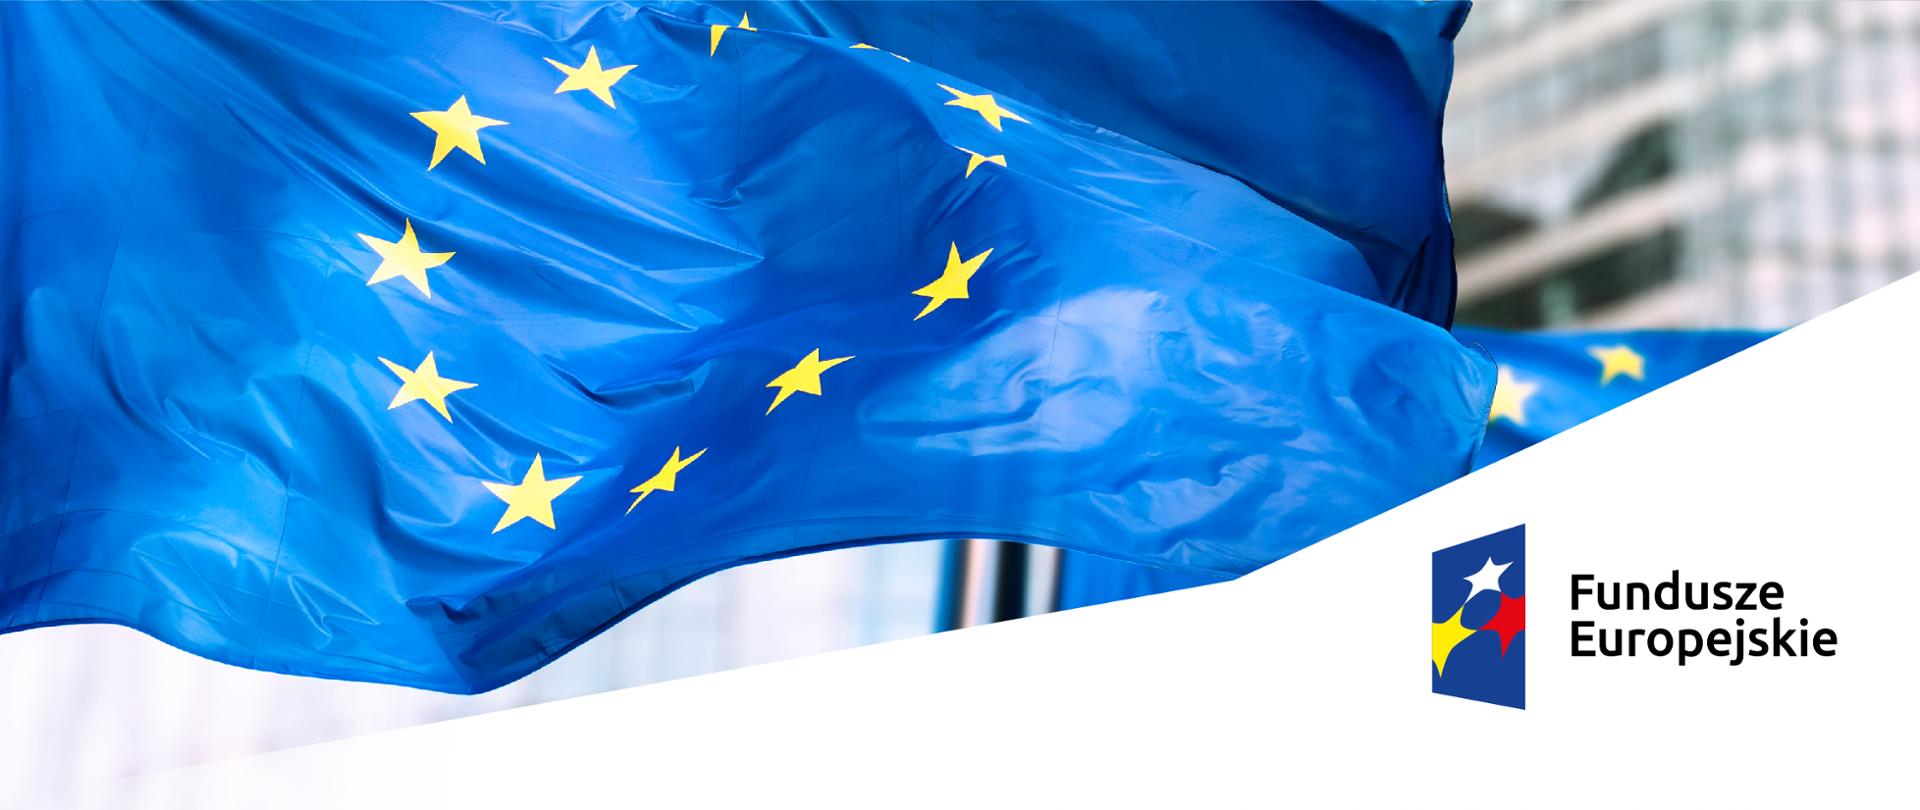 Fundusze Europejskie (banner)